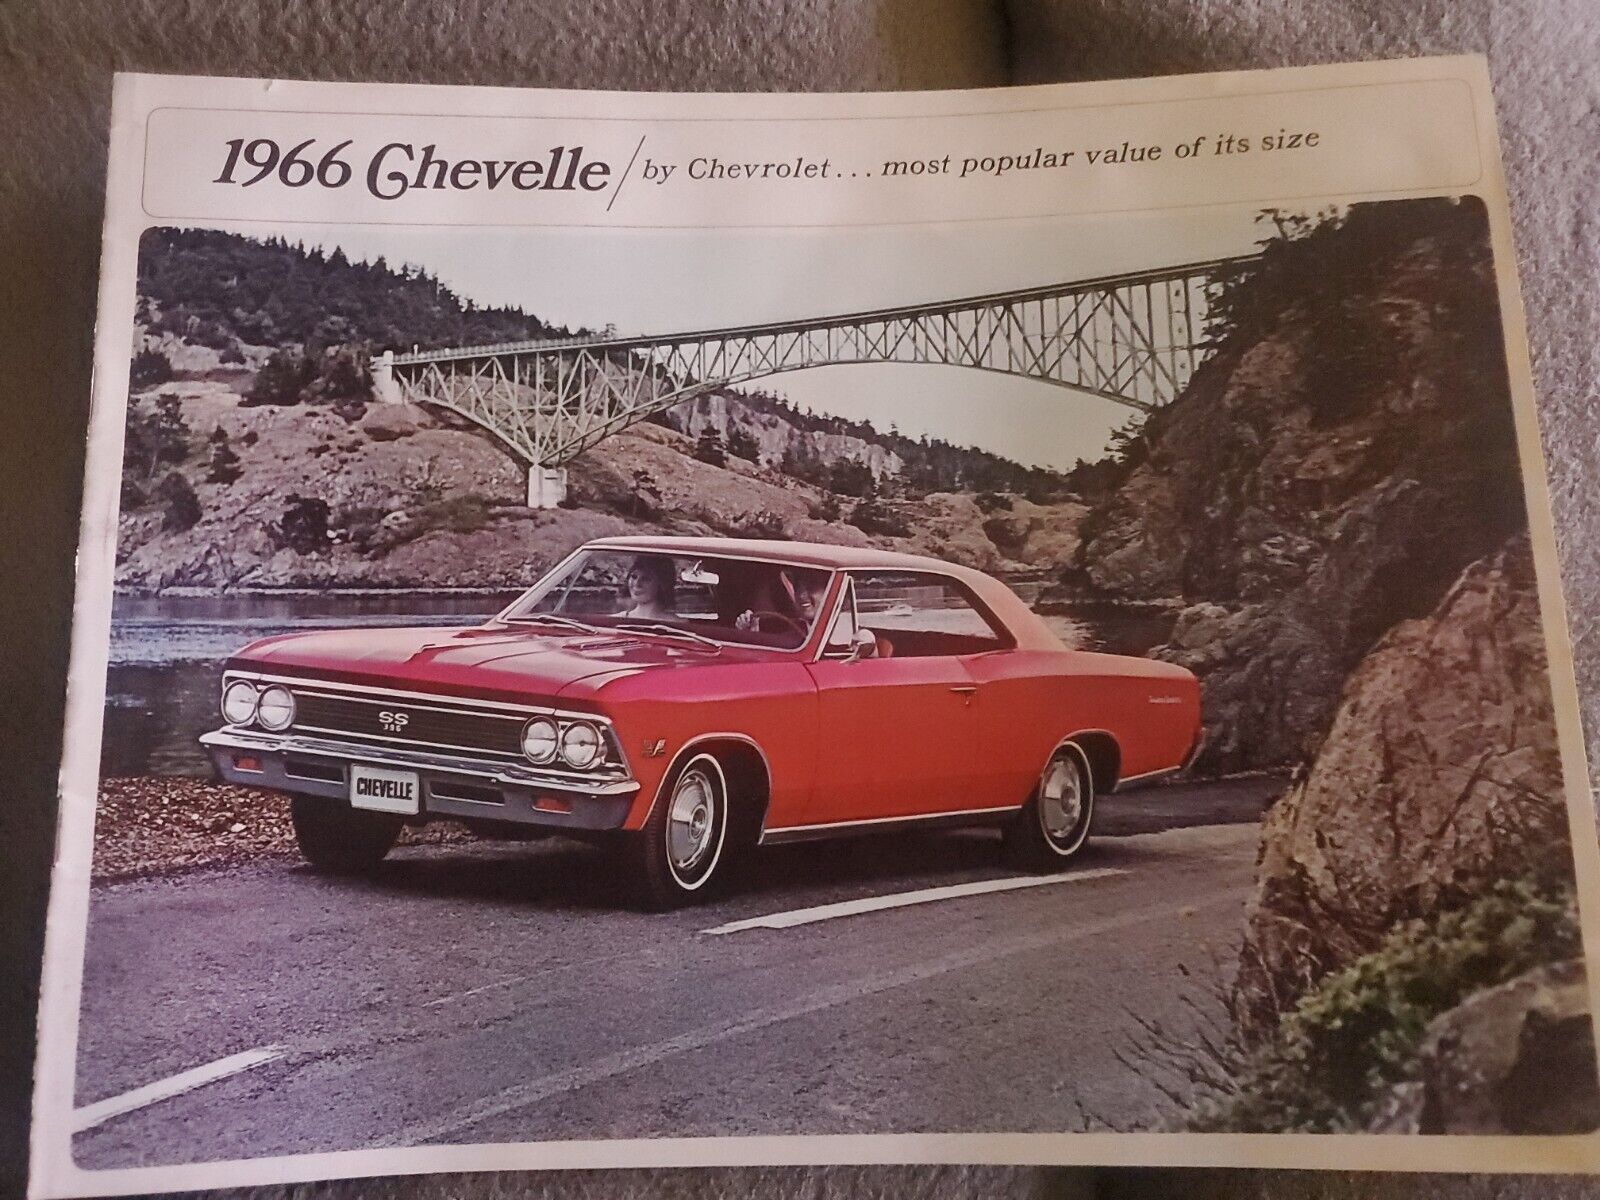 1966 Chevrolet Chevelle color sales brochure A23